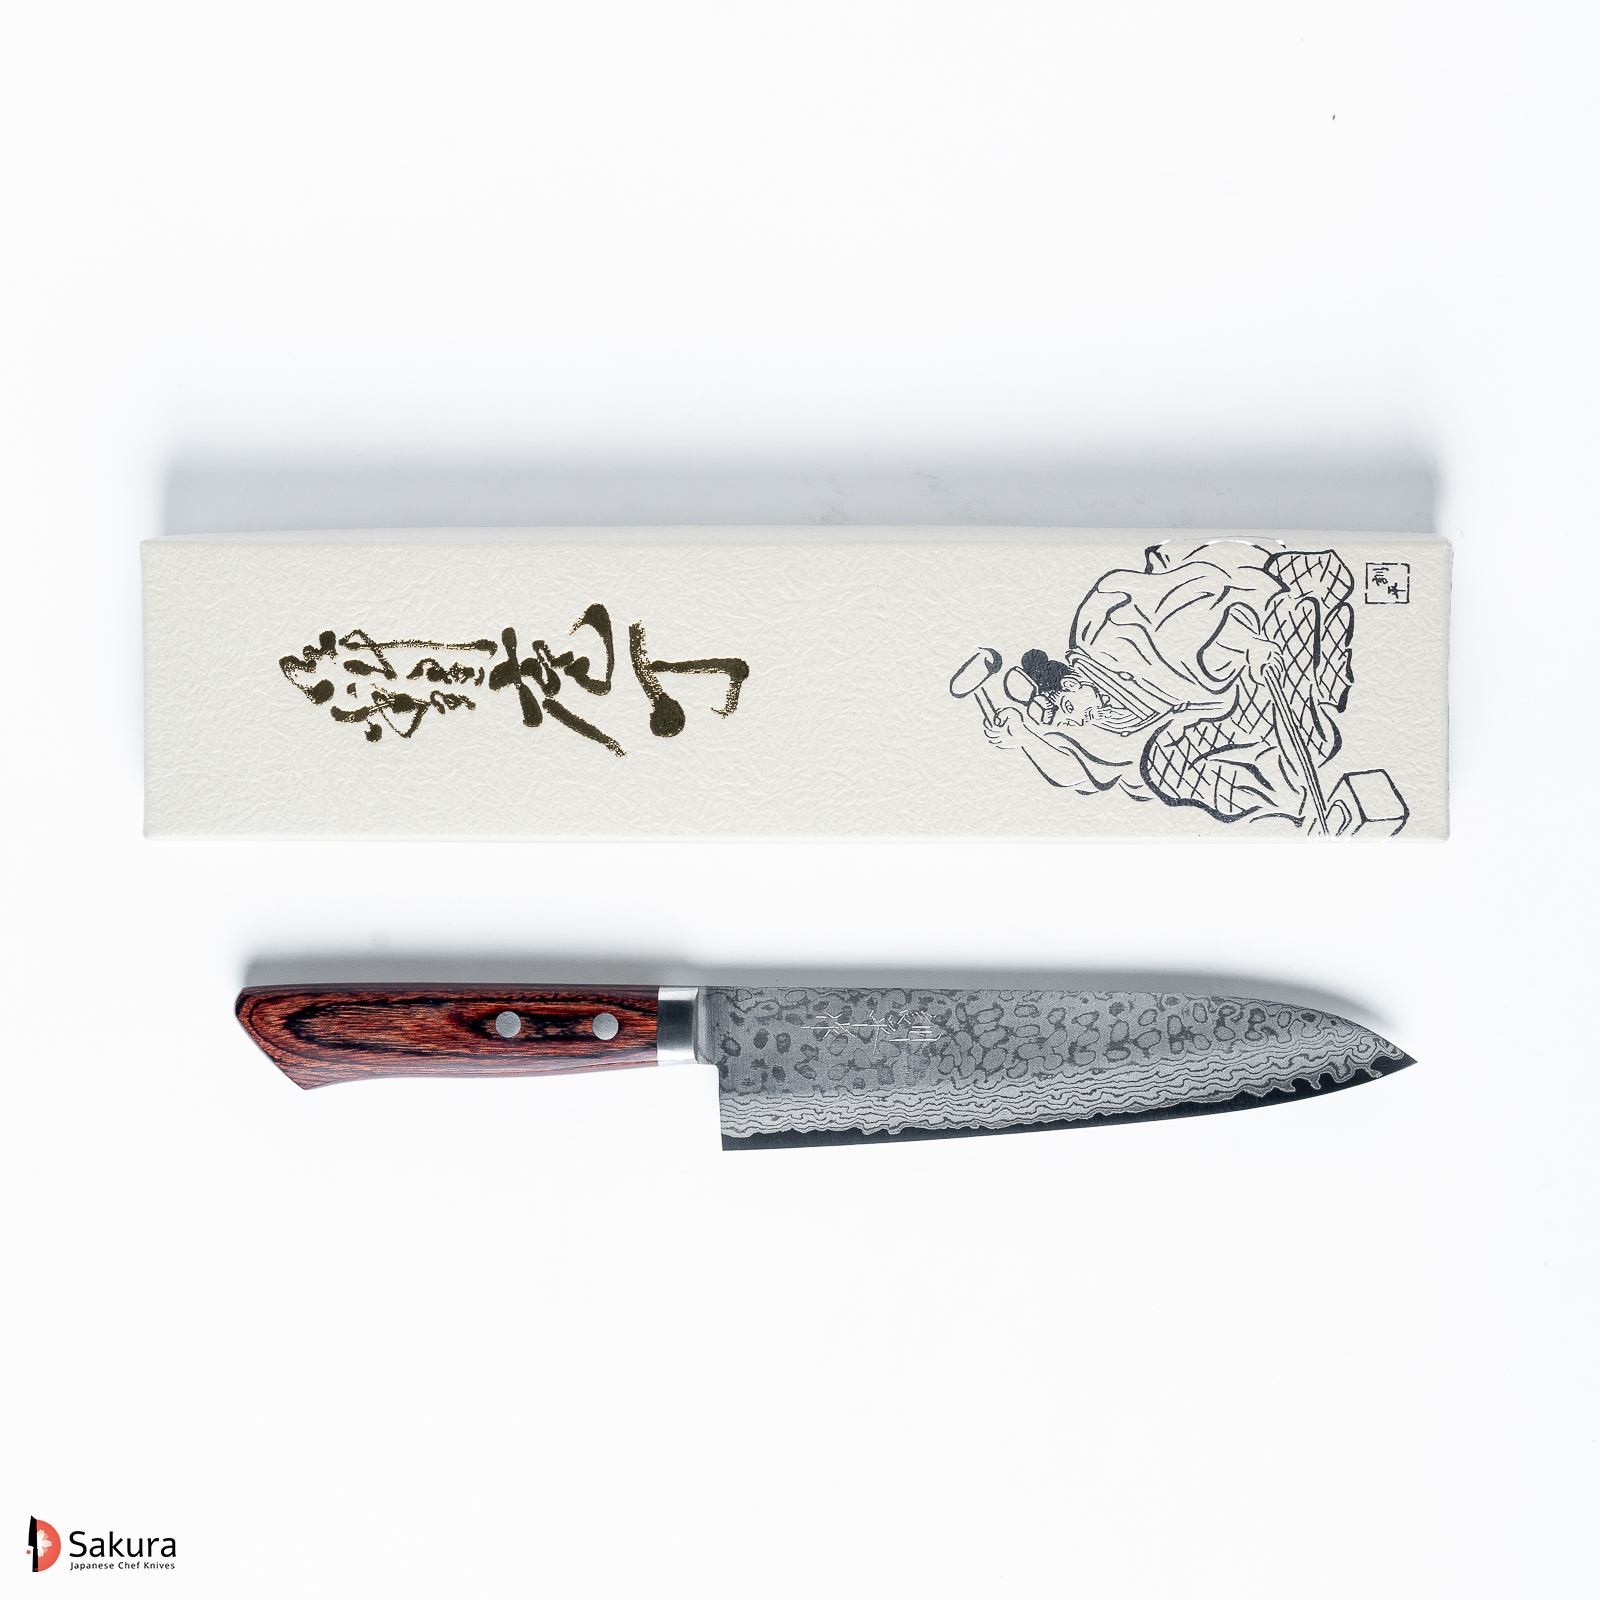 סכין שף רב תכליתית גִּיוּטוֹ 180מ״מ פלדת VG-10 גימור קיפולי דמשק ידית עץ מהגוני חומה מאסוטאני יפן מק״ט SKMASUGYU180SAIRU2313